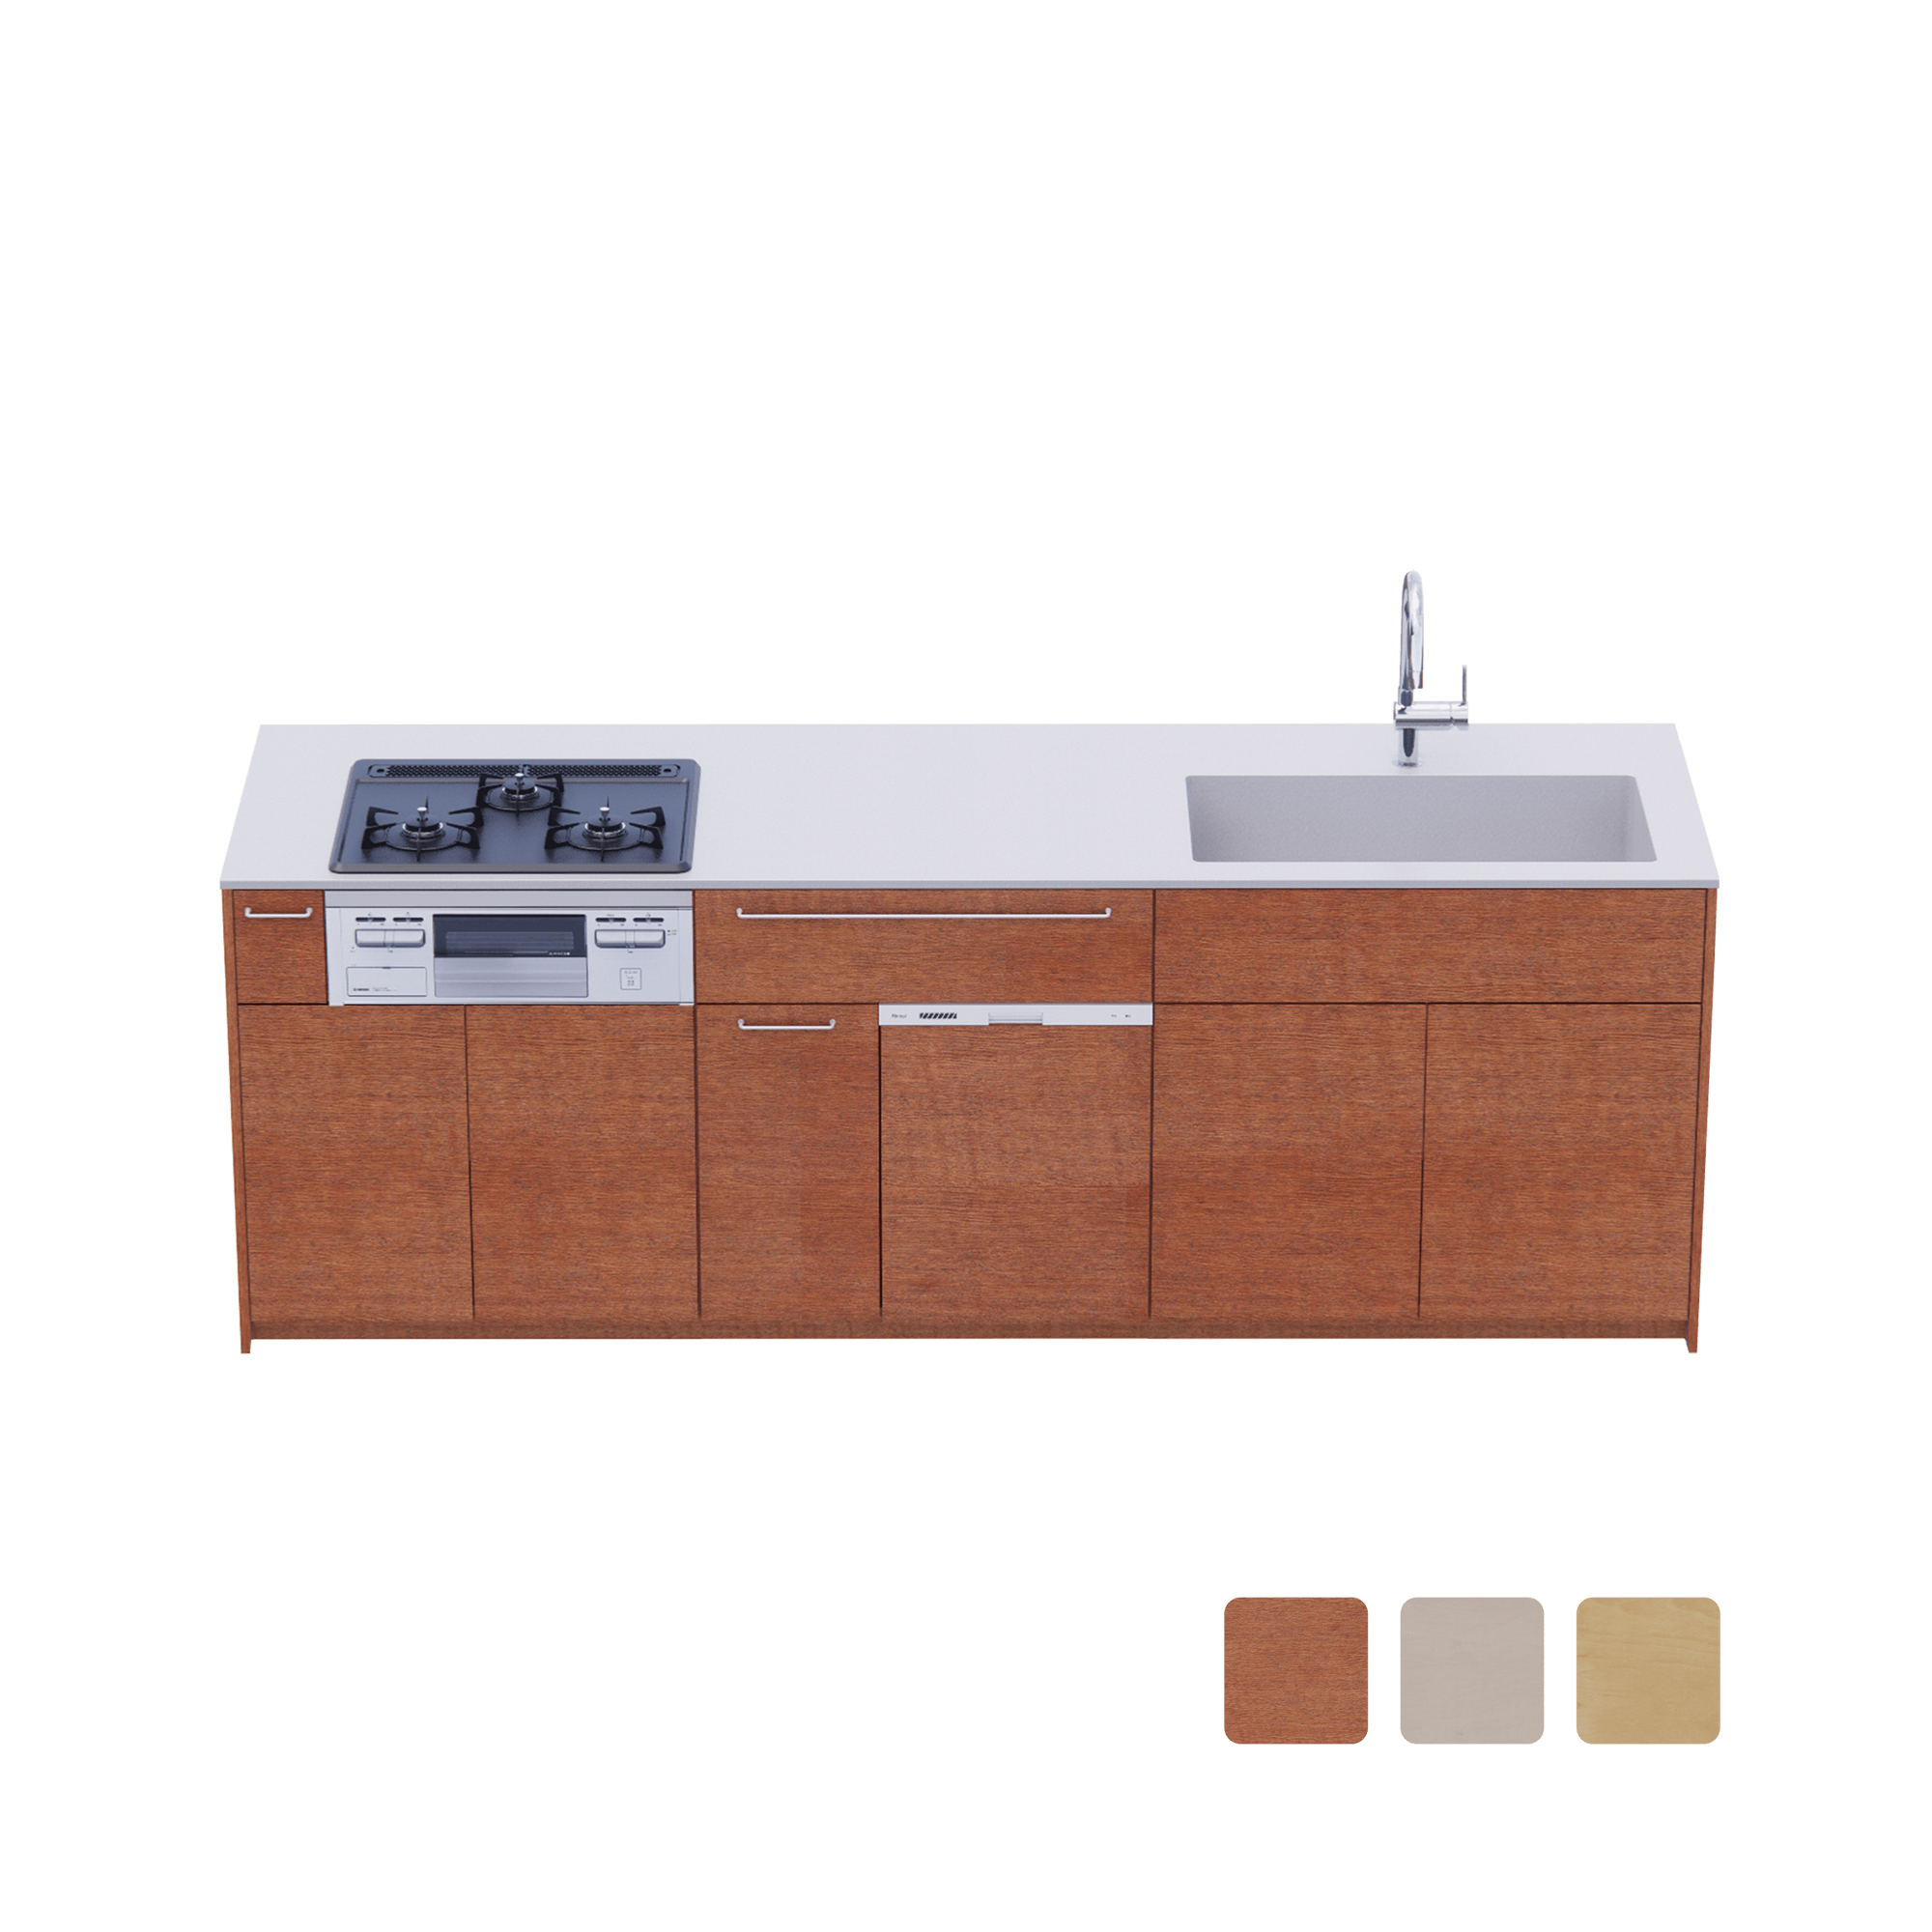 木製システムキッチン 対面型 W2440～2740・コンロあり / オーブンなし / 食洗機あり KB-KC022-44-G183 対面型 W2440　※ 別売り品の水栓・コンロ・食洗機を設置した時のイメージです